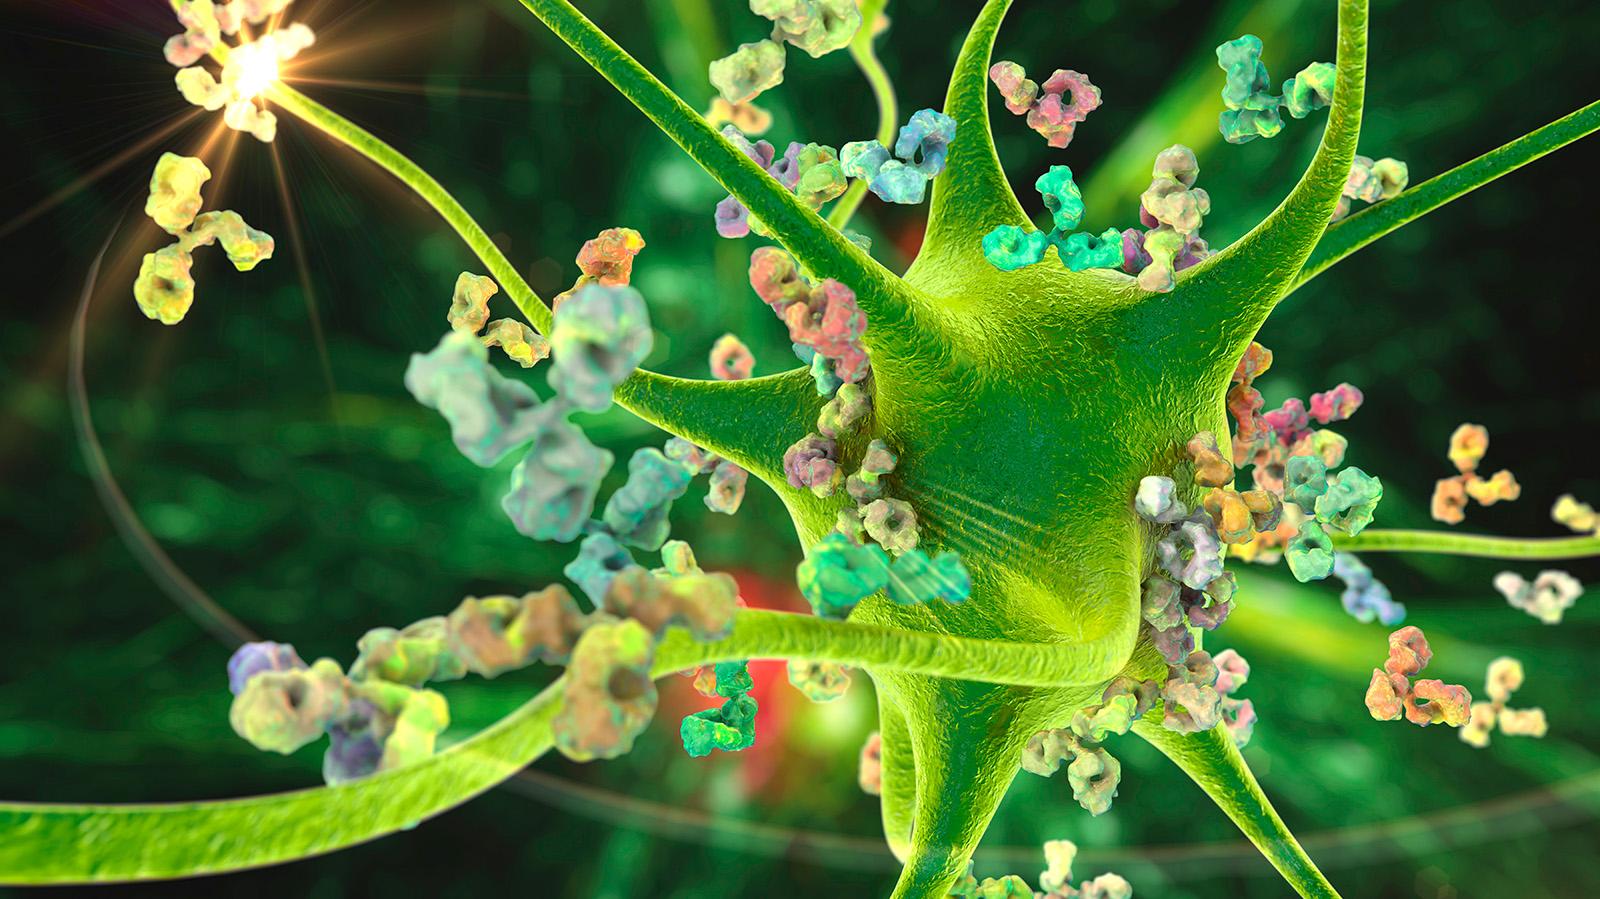 Vihreä monihaarainen hermosolu, jonka pinnassa ja ympärillä on värikkäitä nystyröitä.